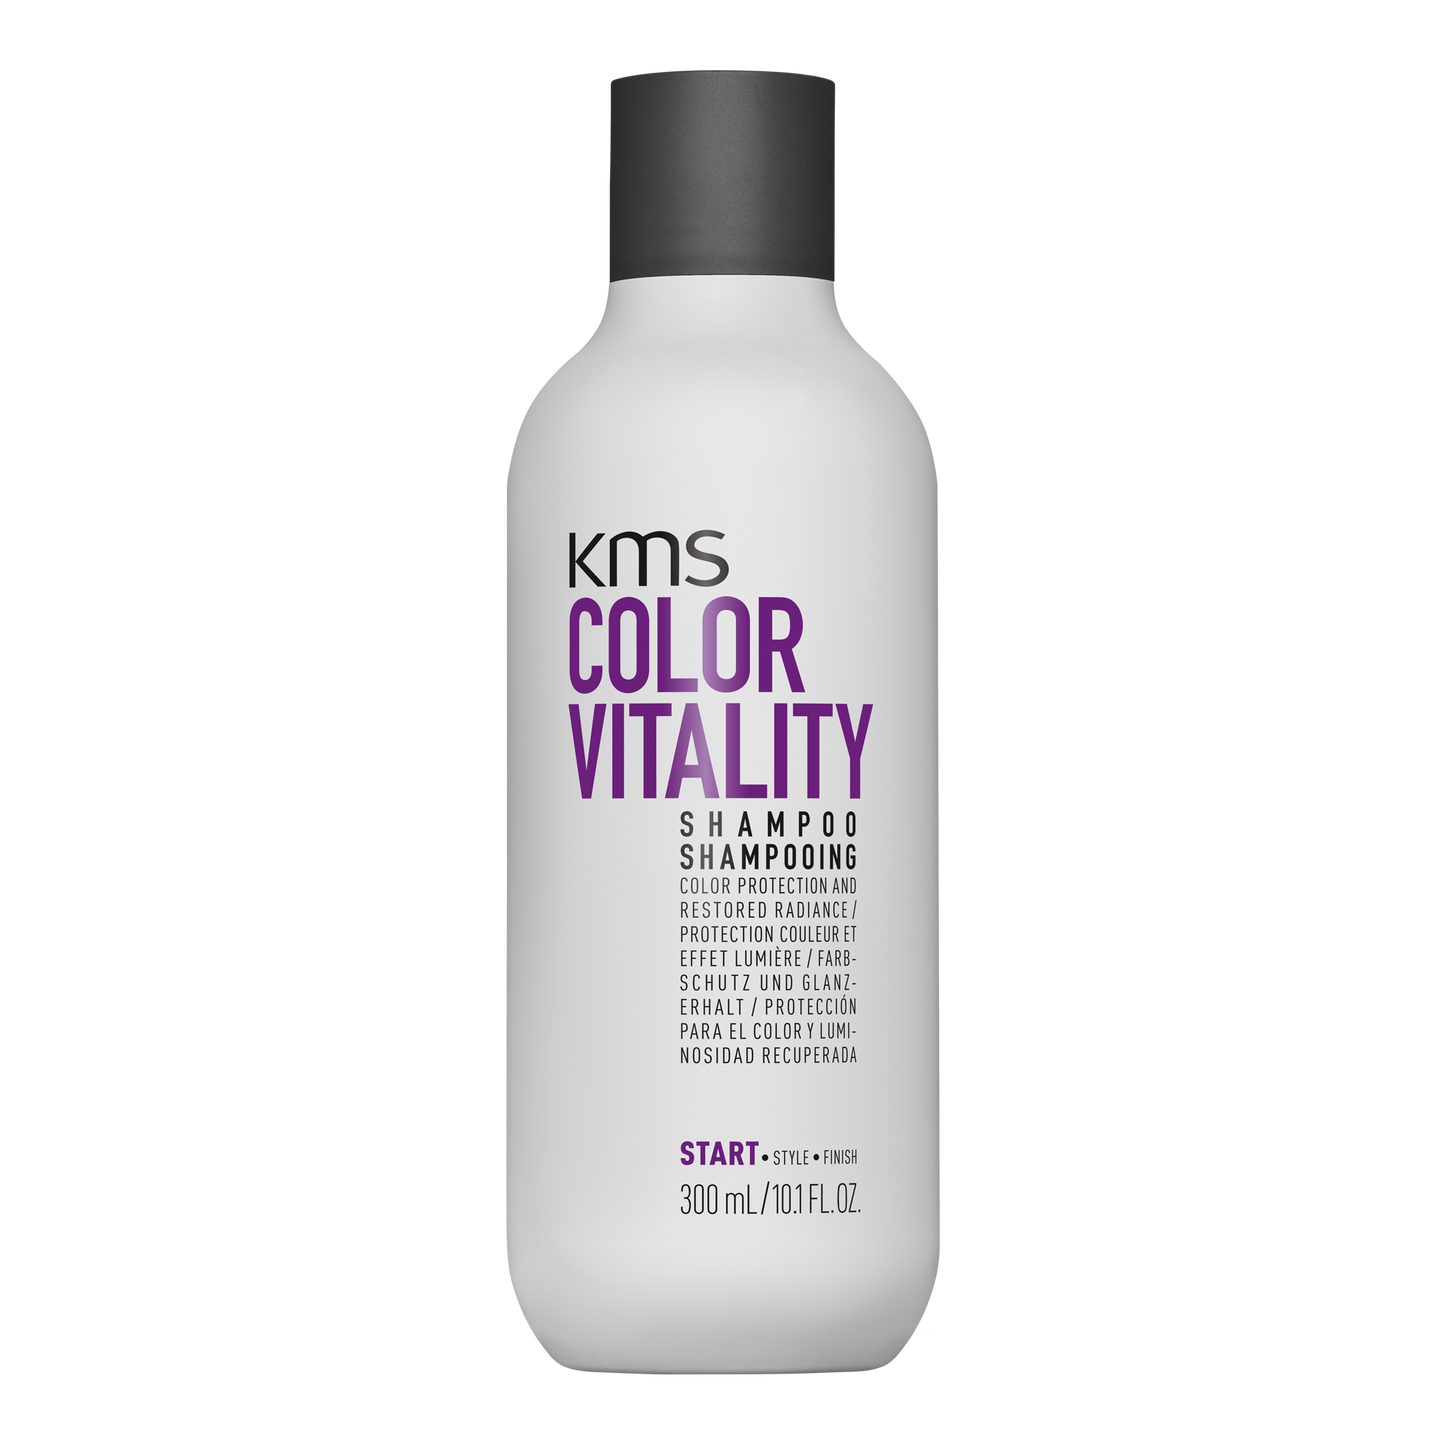 KMS COLORVITALITY Shampoo 300mL